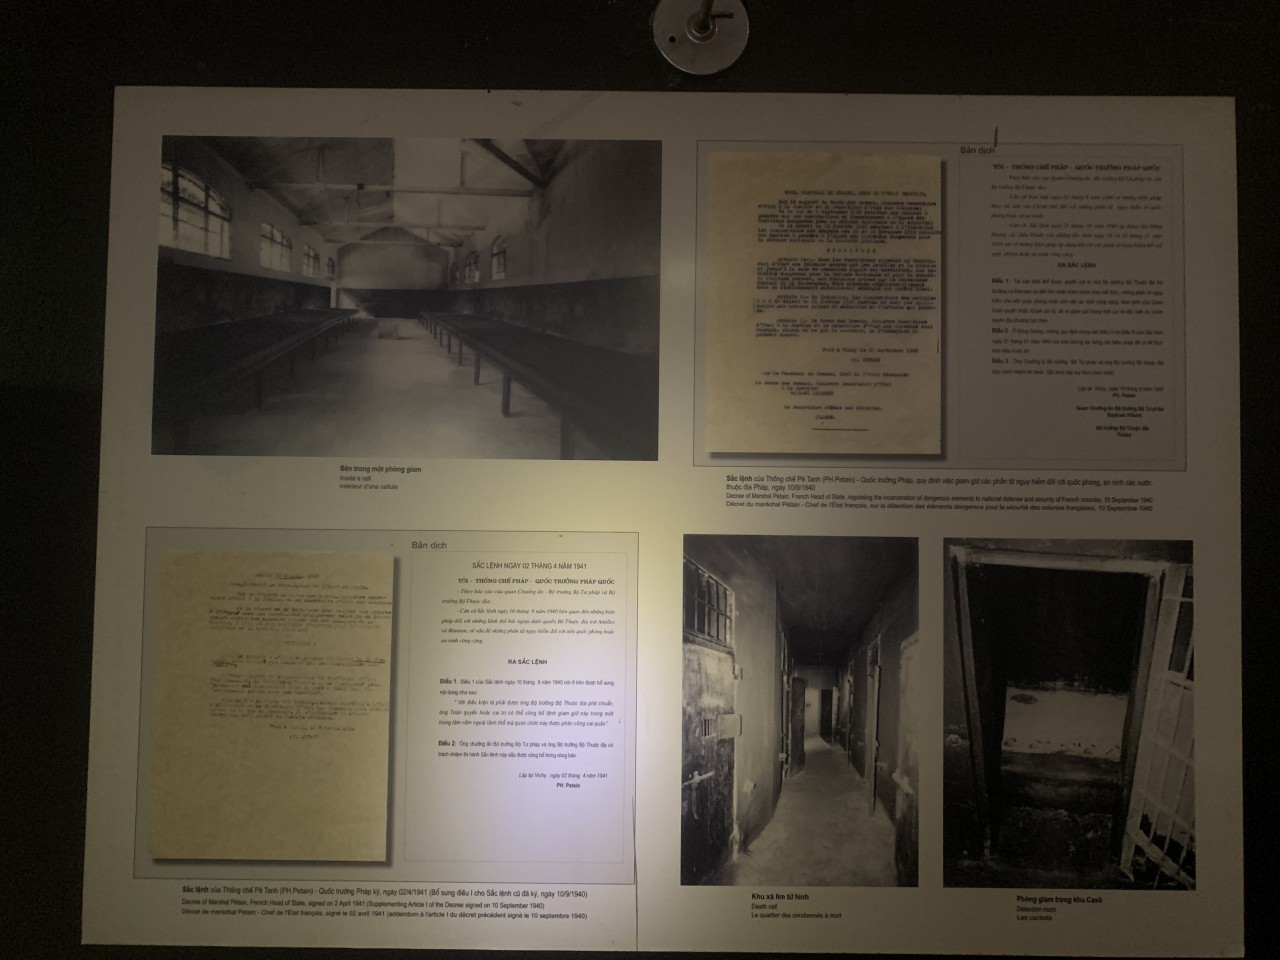 Hình ảnh khu bếp, khu vệ sinh, bản giấy tờ bắt giữ chiến sĩ.